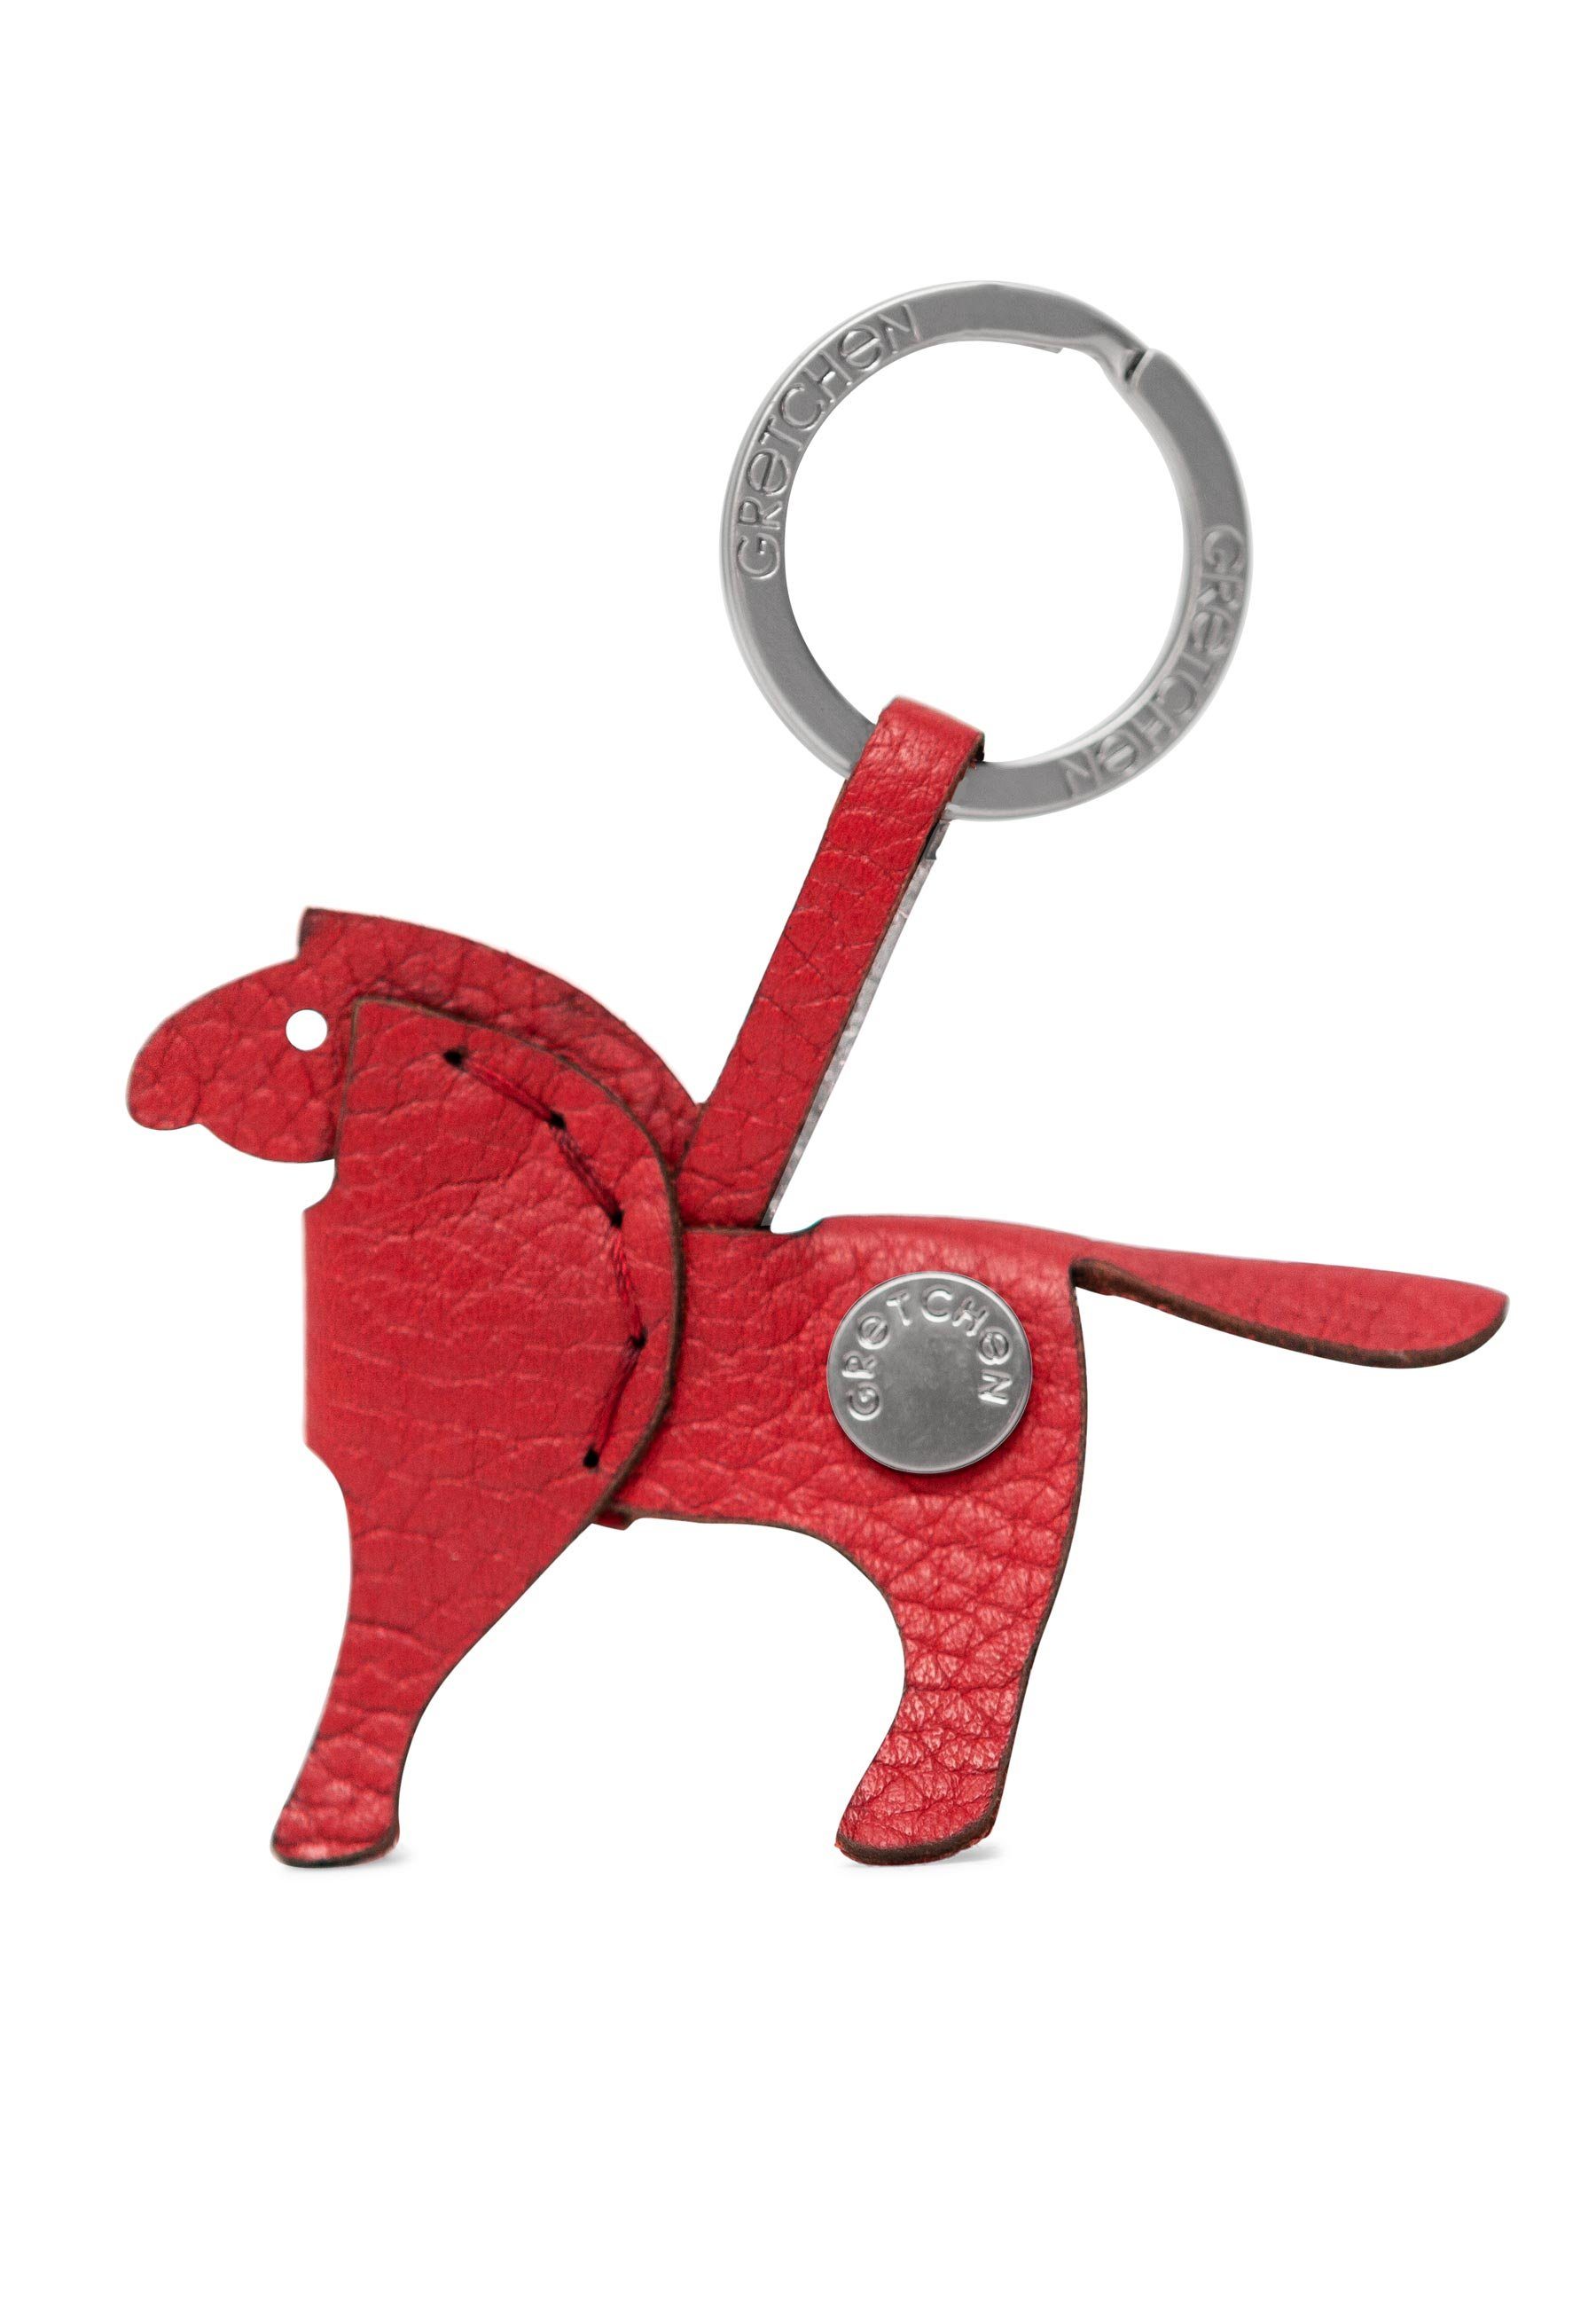 GRETCHEN italienischem Kalbsleder Schlüsselanhänger Keyring, rot-silberfarben Pony aus